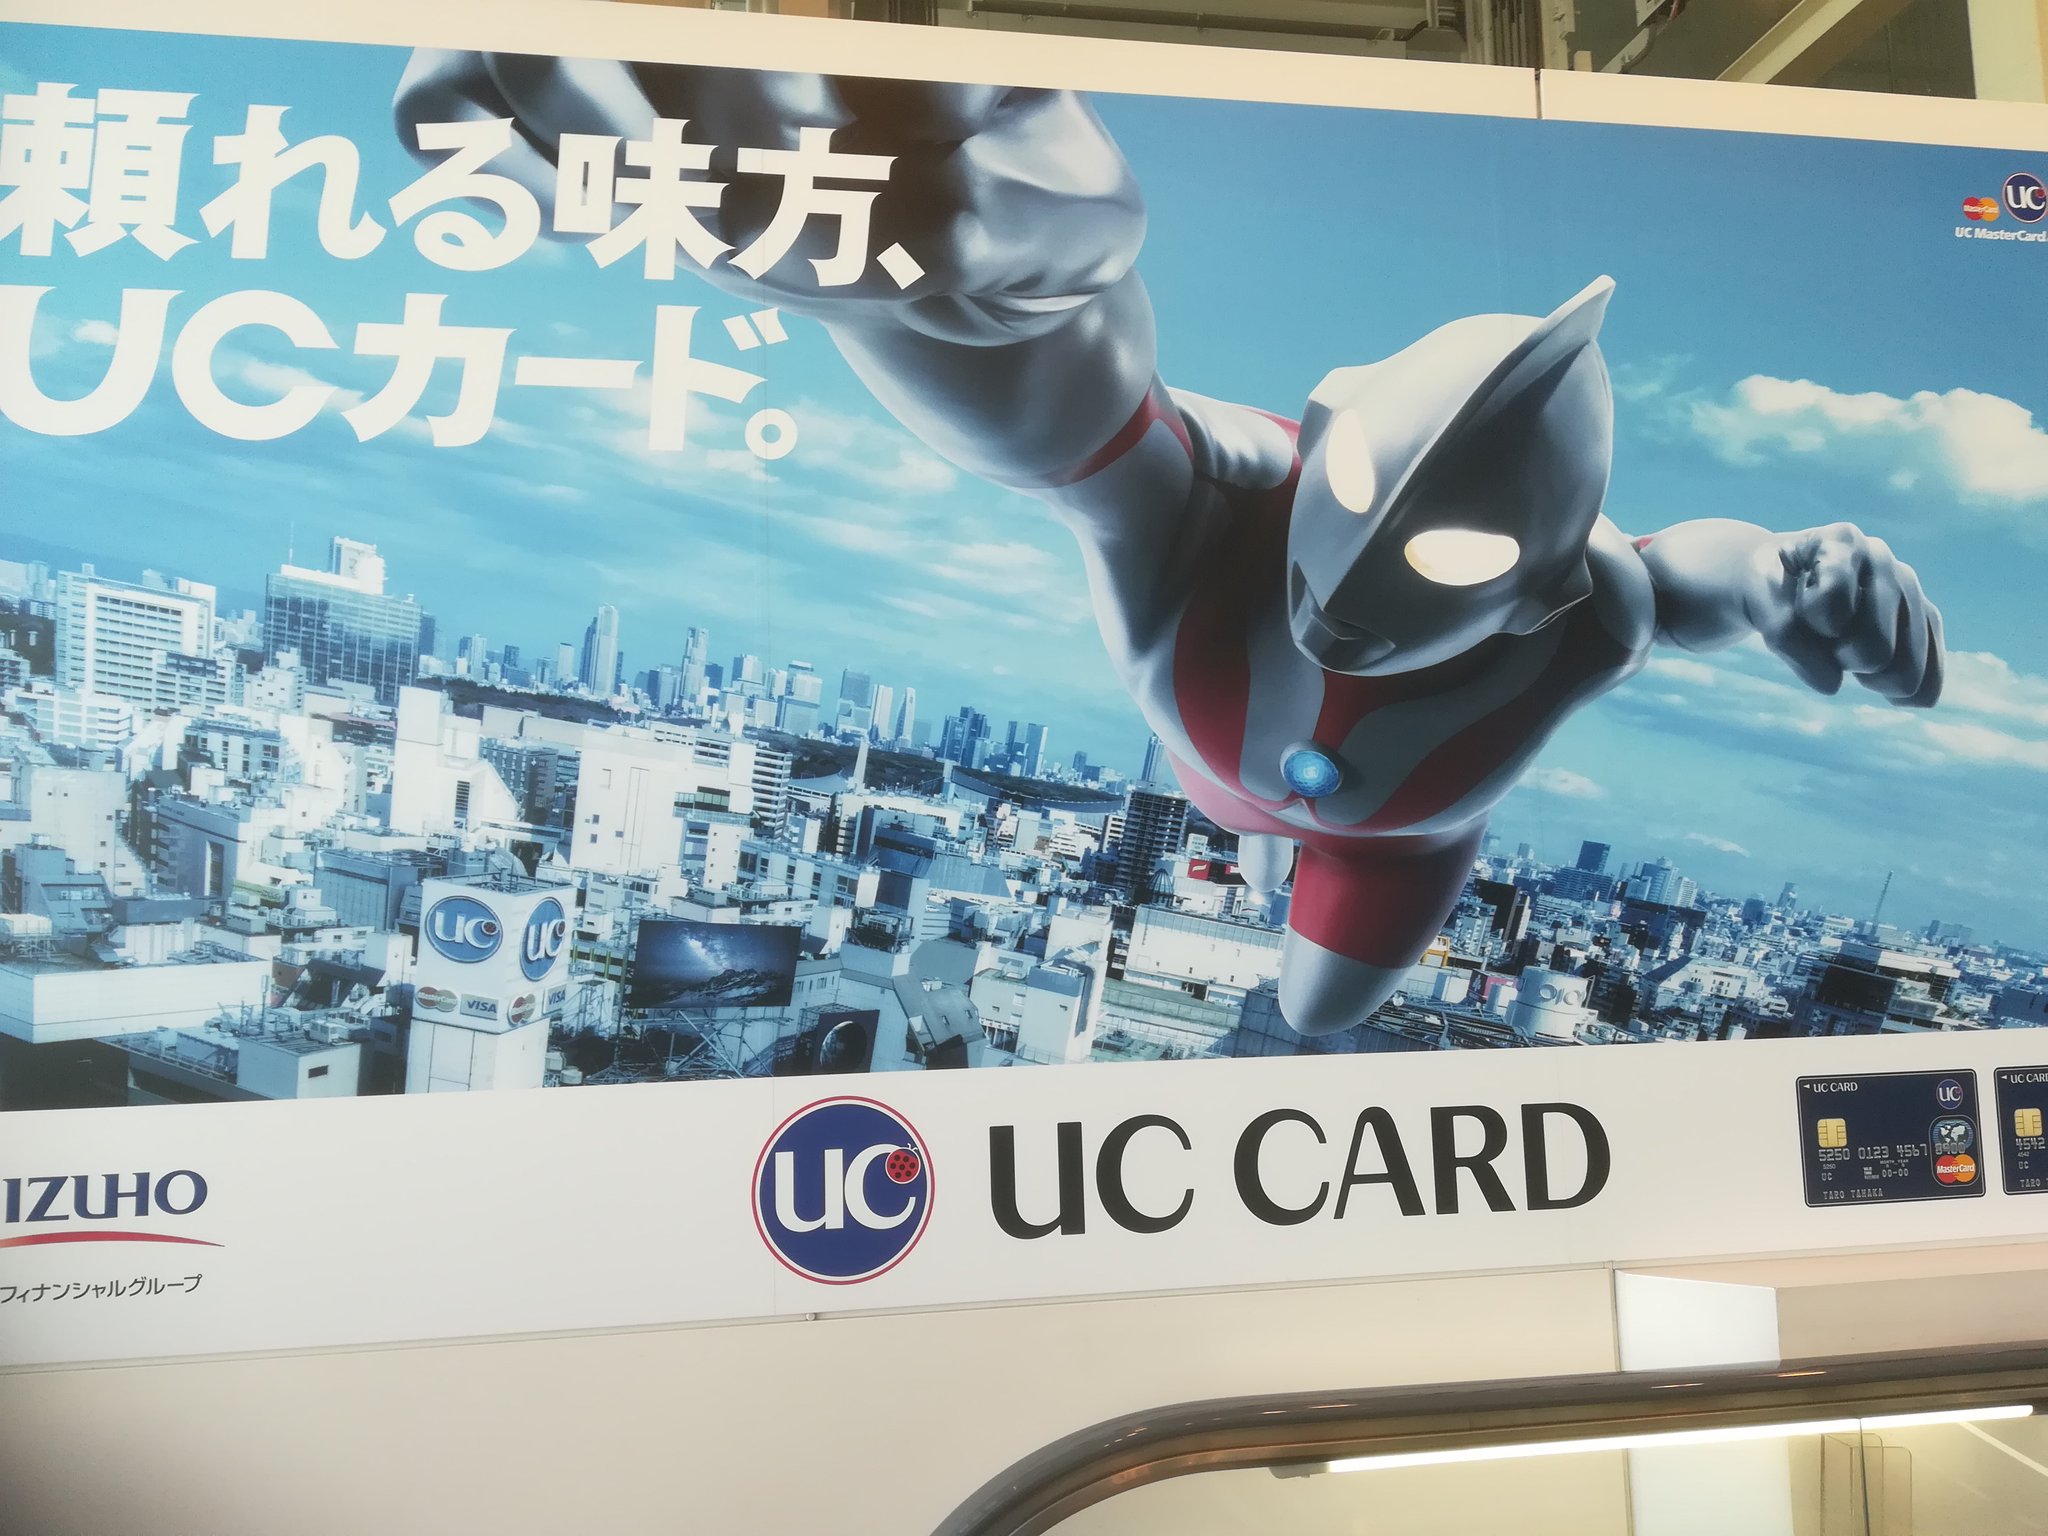 うぷとらまんじゅう 羽田空港にウルトラマンさんの広告